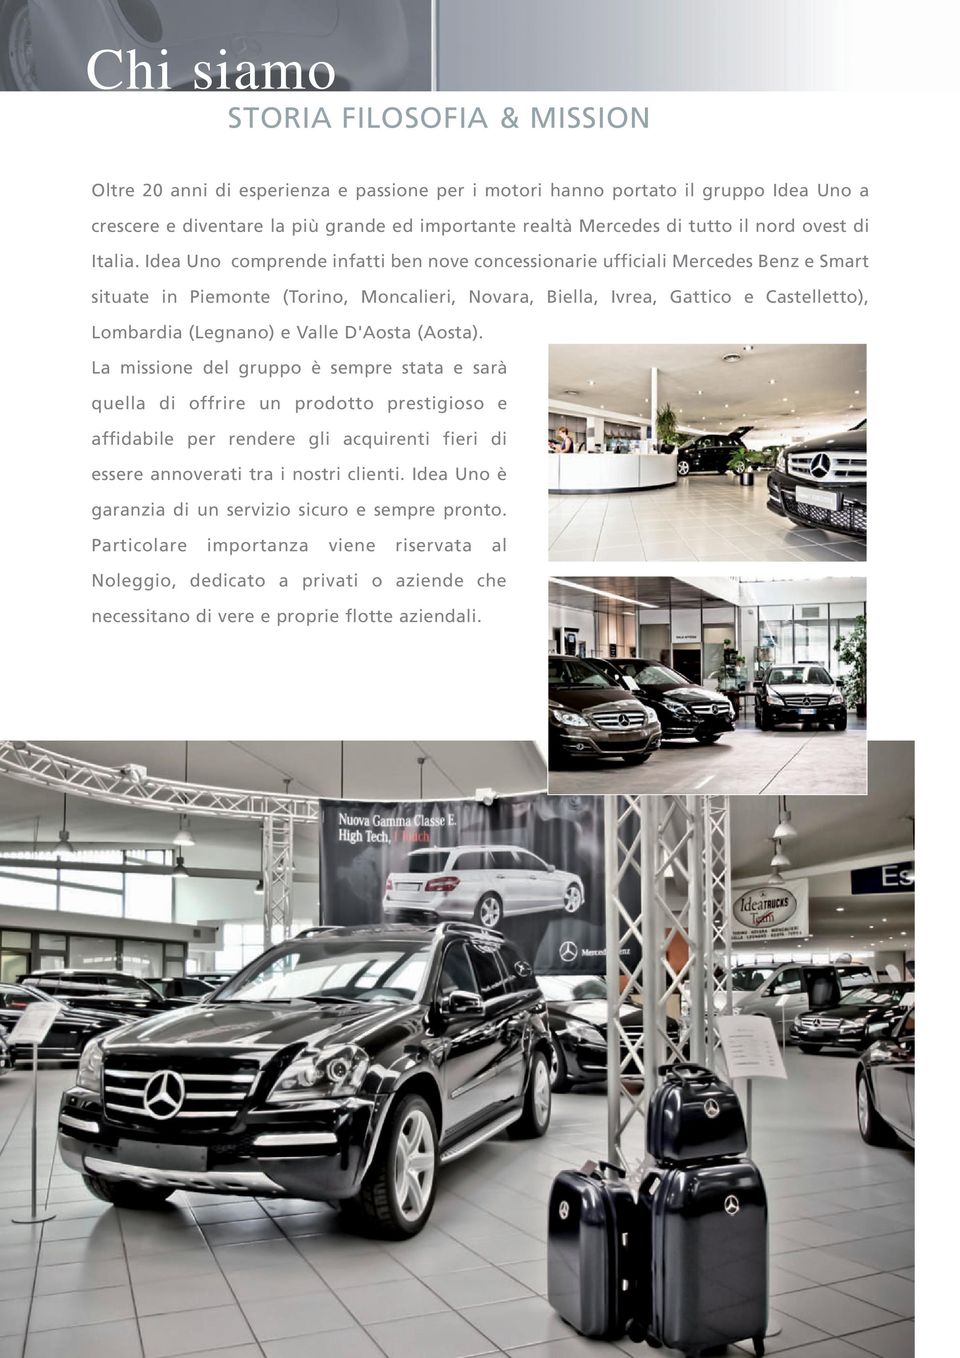 Idea Uno comprende infatti ben nove concessionarie ufficiali Mercedes Benz e Smart situate in Piemonte (Torino, Moncalieri, Novara, Biella, Ivrea, Gattico e Castelletto), Lombardia (Legnano) e Valle